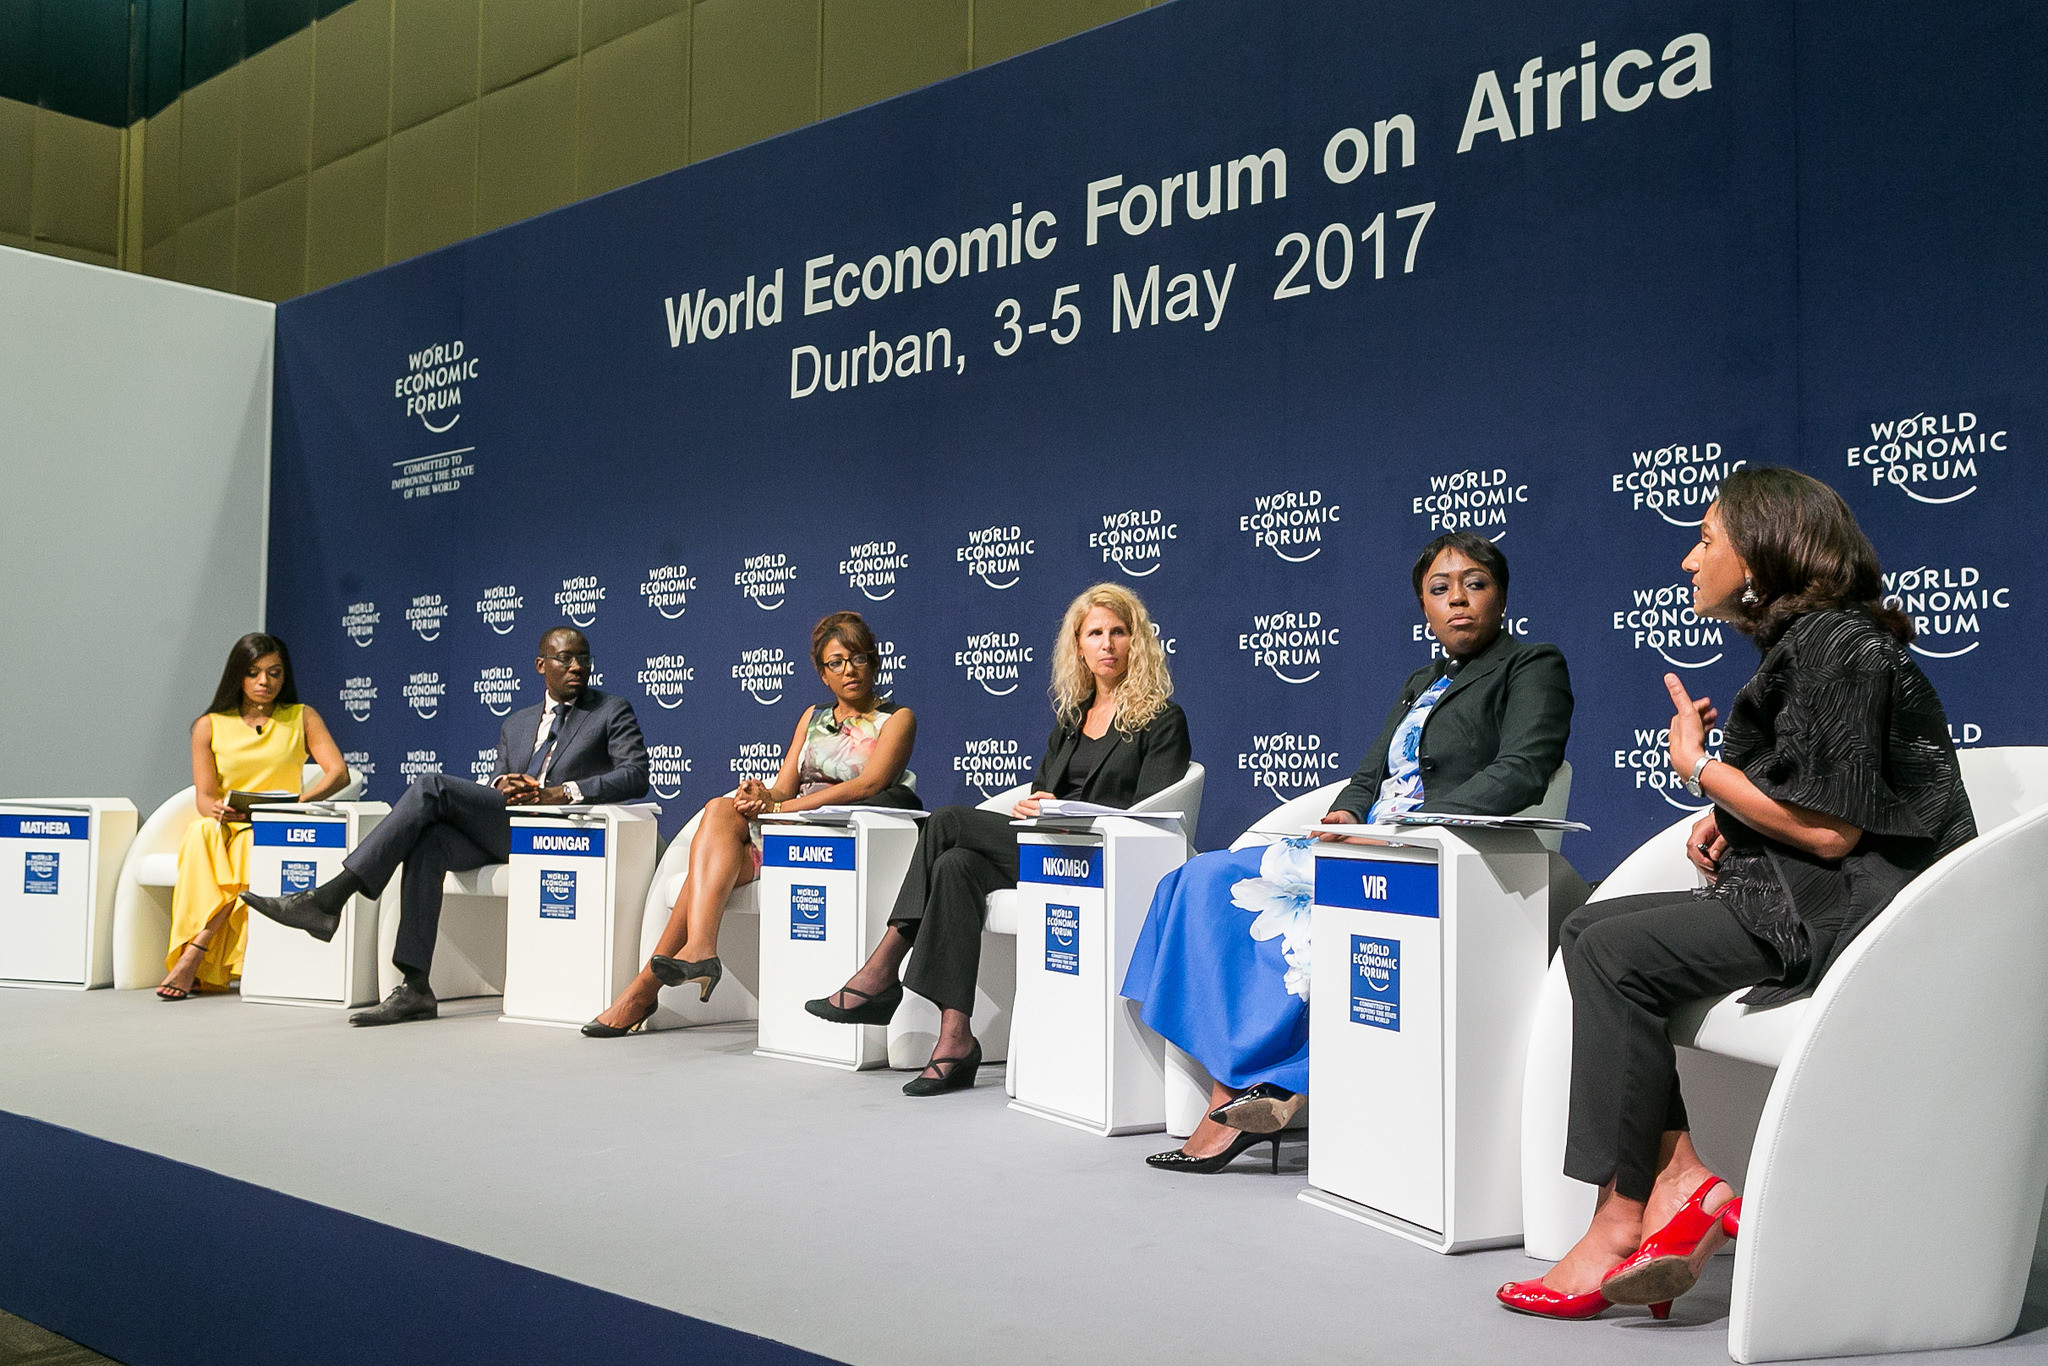 Le Forum économique mondial africain s’achève avec un appel pour une croissance inclusive